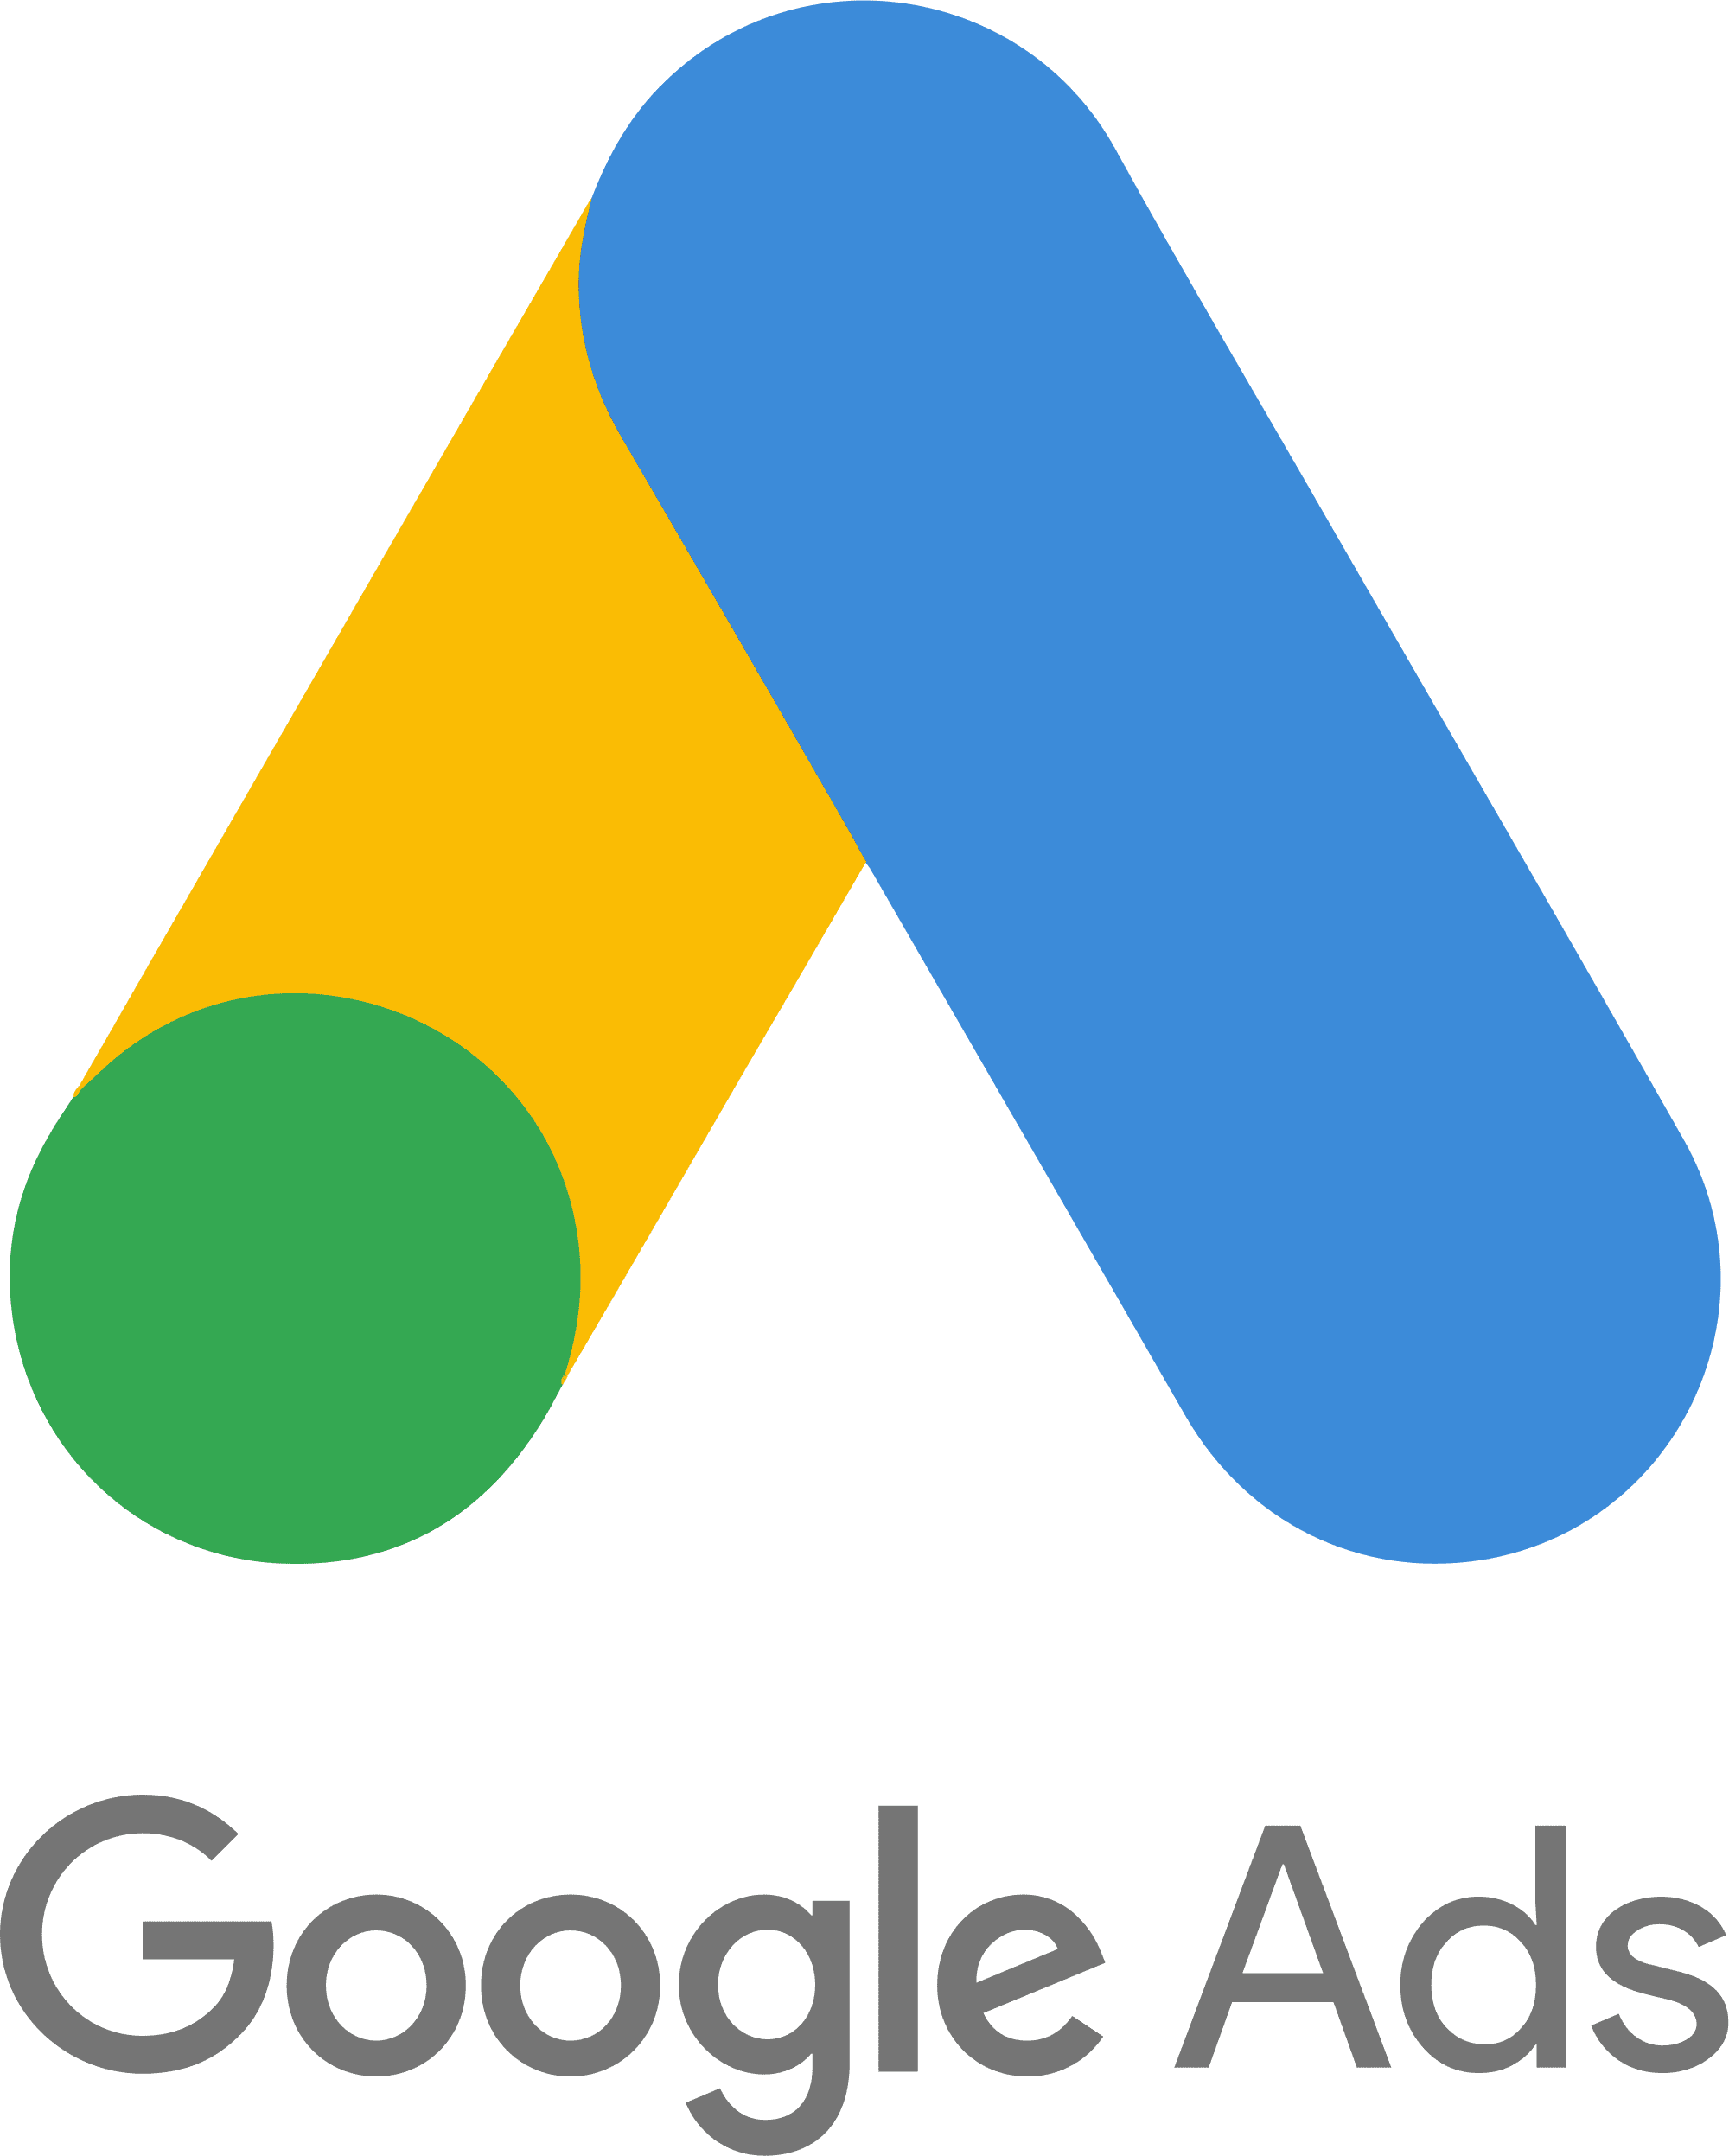 2000px-Google_Ads_logo.svg